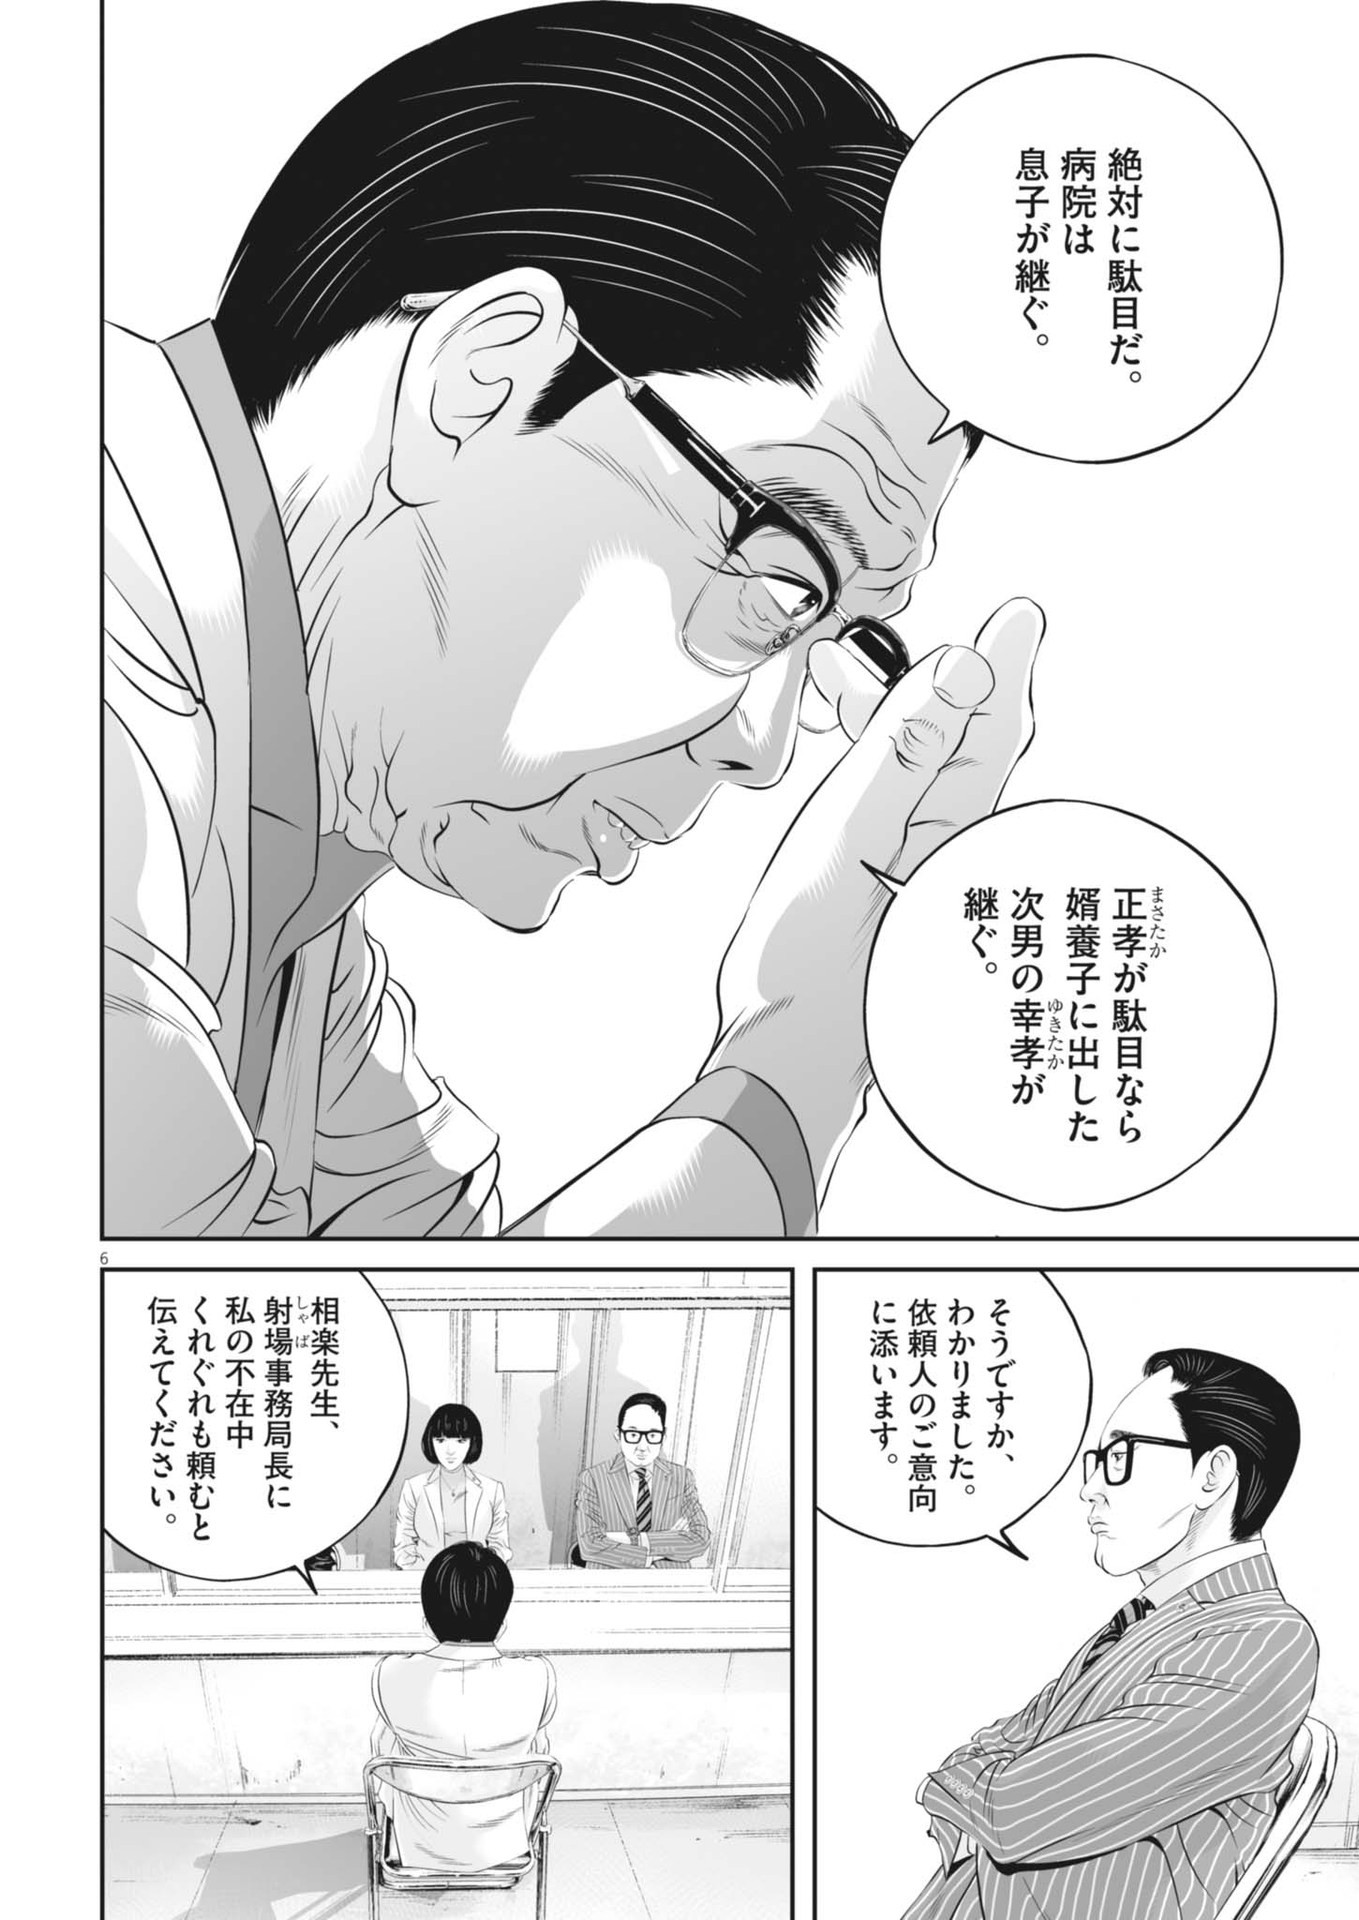 Kujou no Taizai - Chapter 99 - Page 6